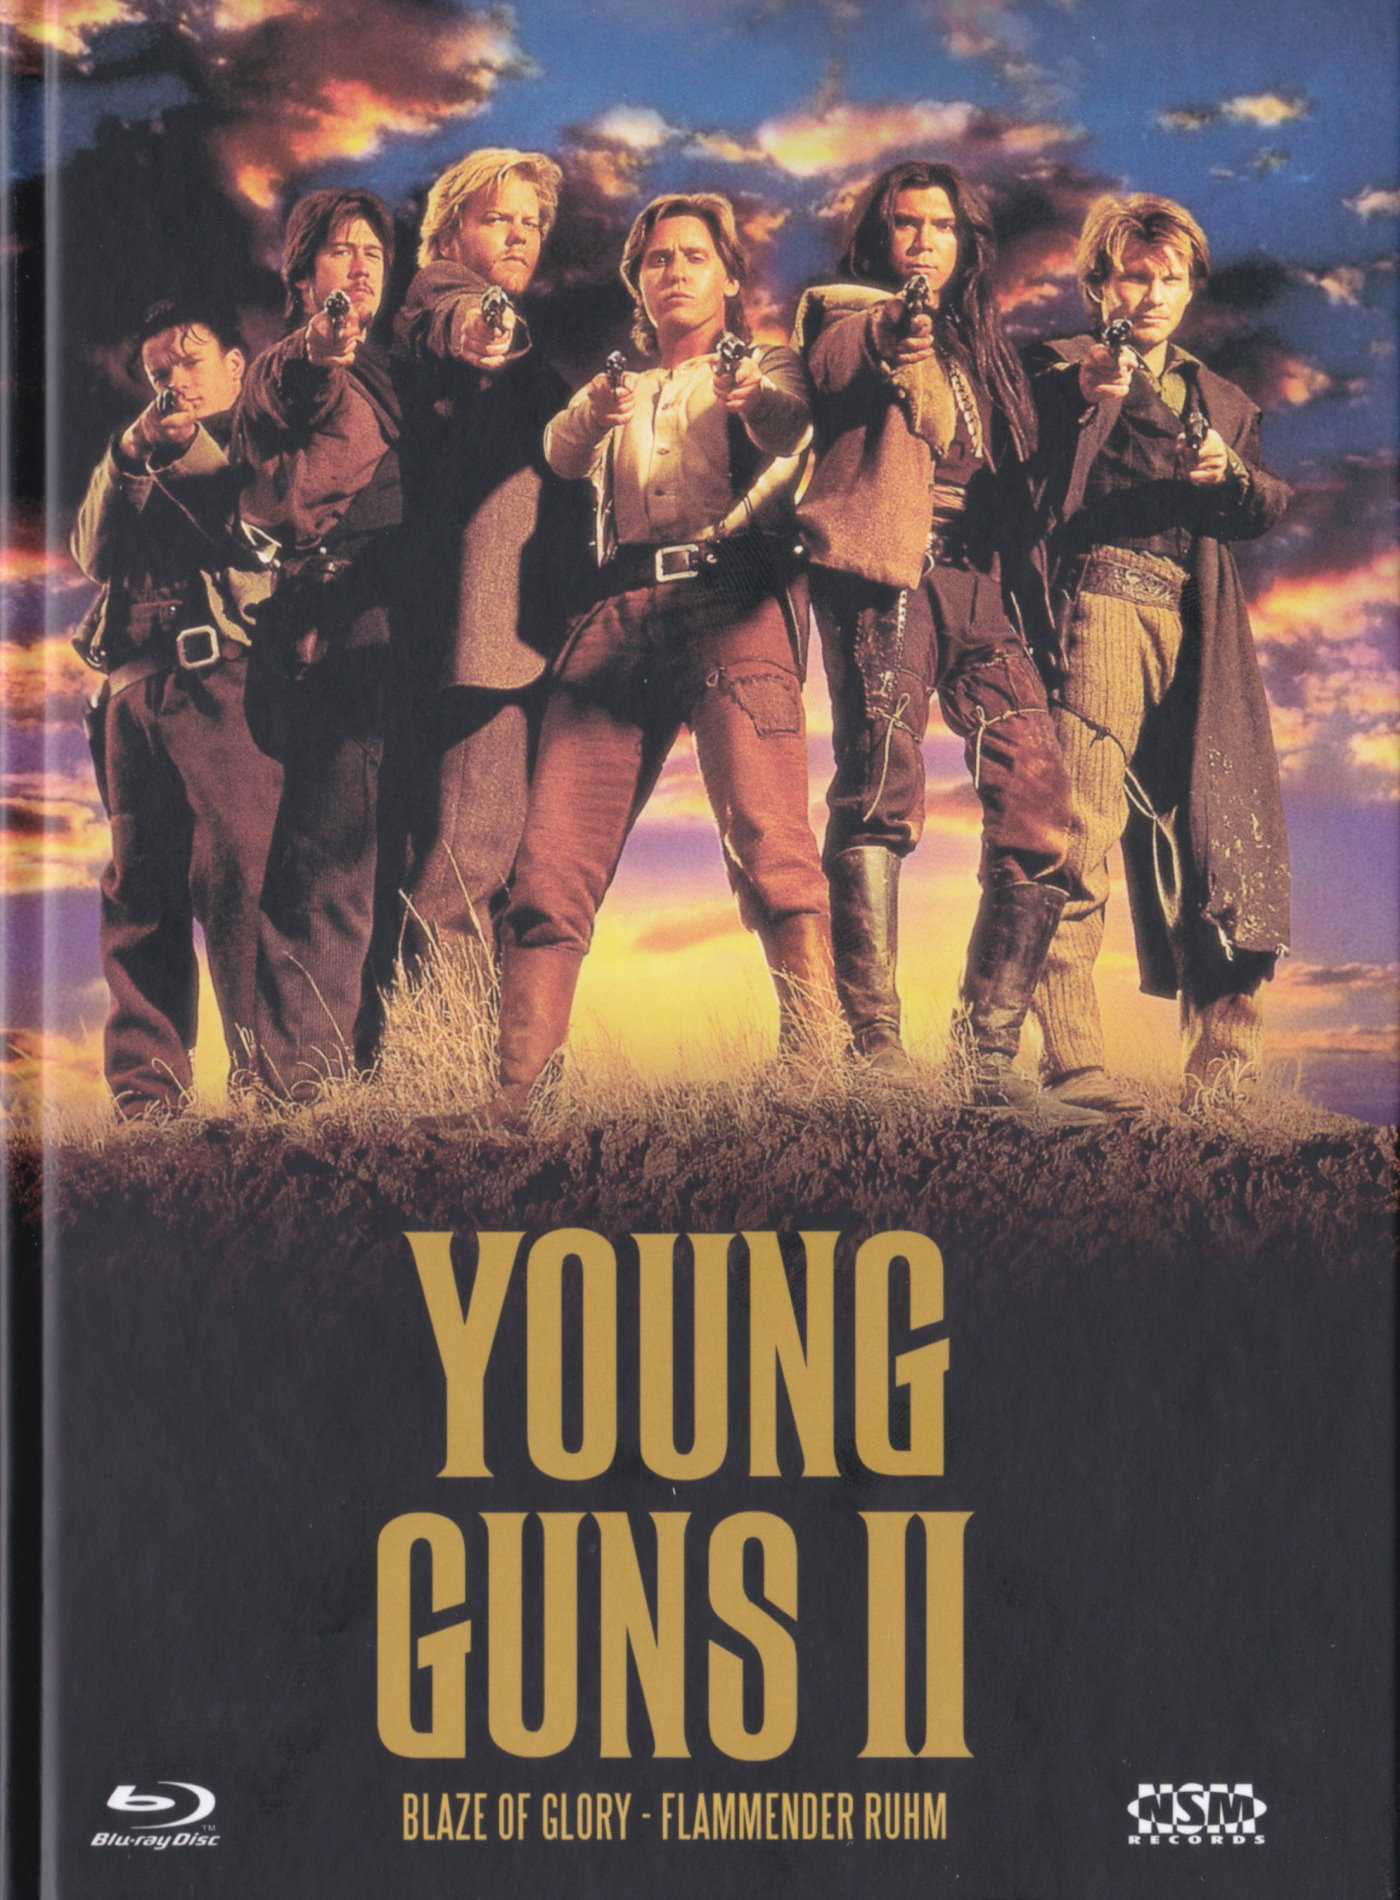 Cover - Young Guns II - Blaze of Glory - Flammender Ruhm.jpg